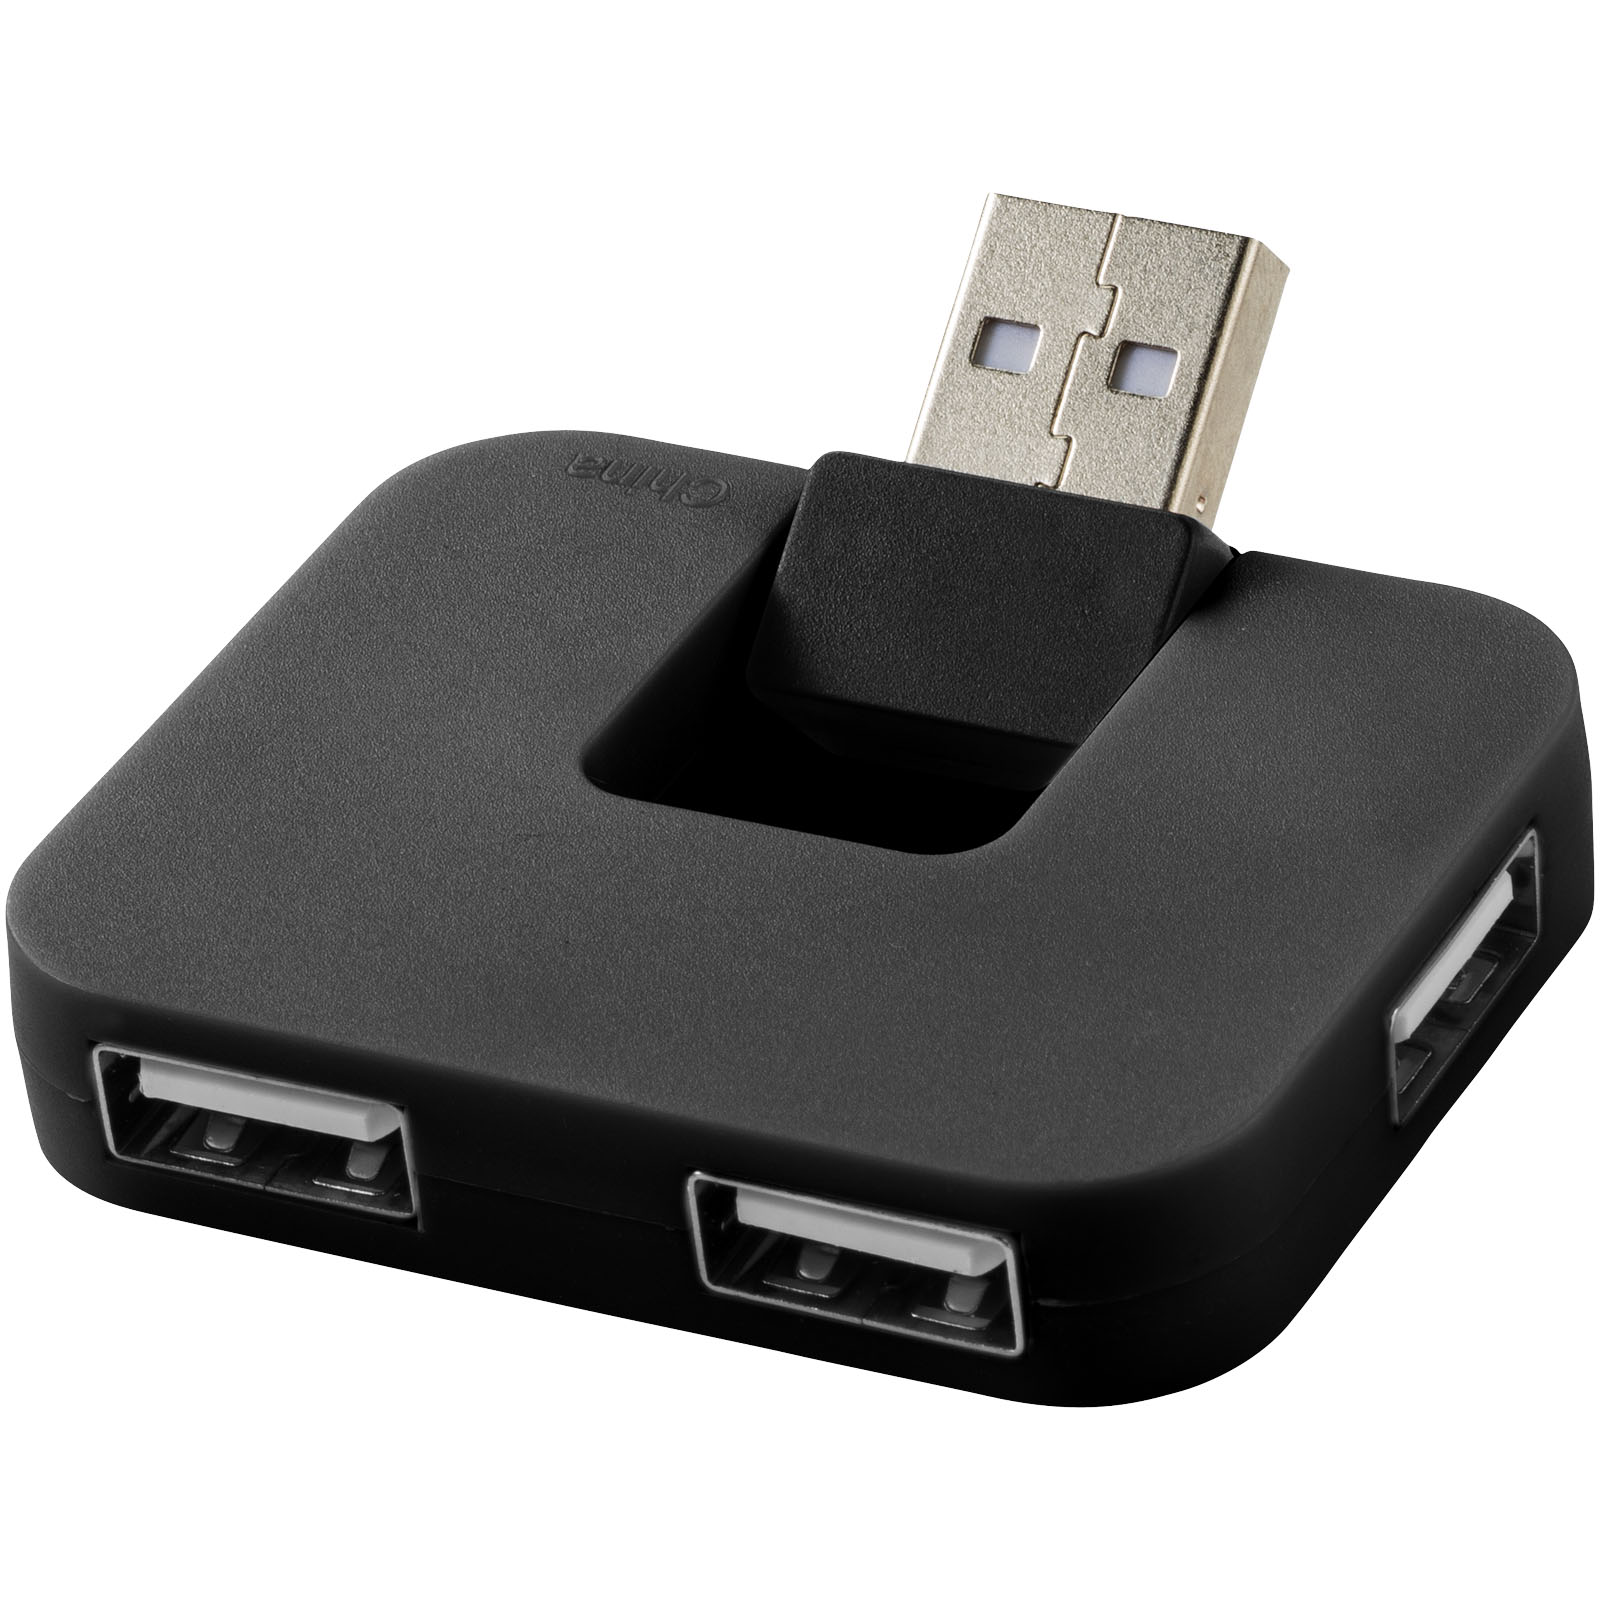 Plastový USB hub PLICA se skládacím vstupním portem